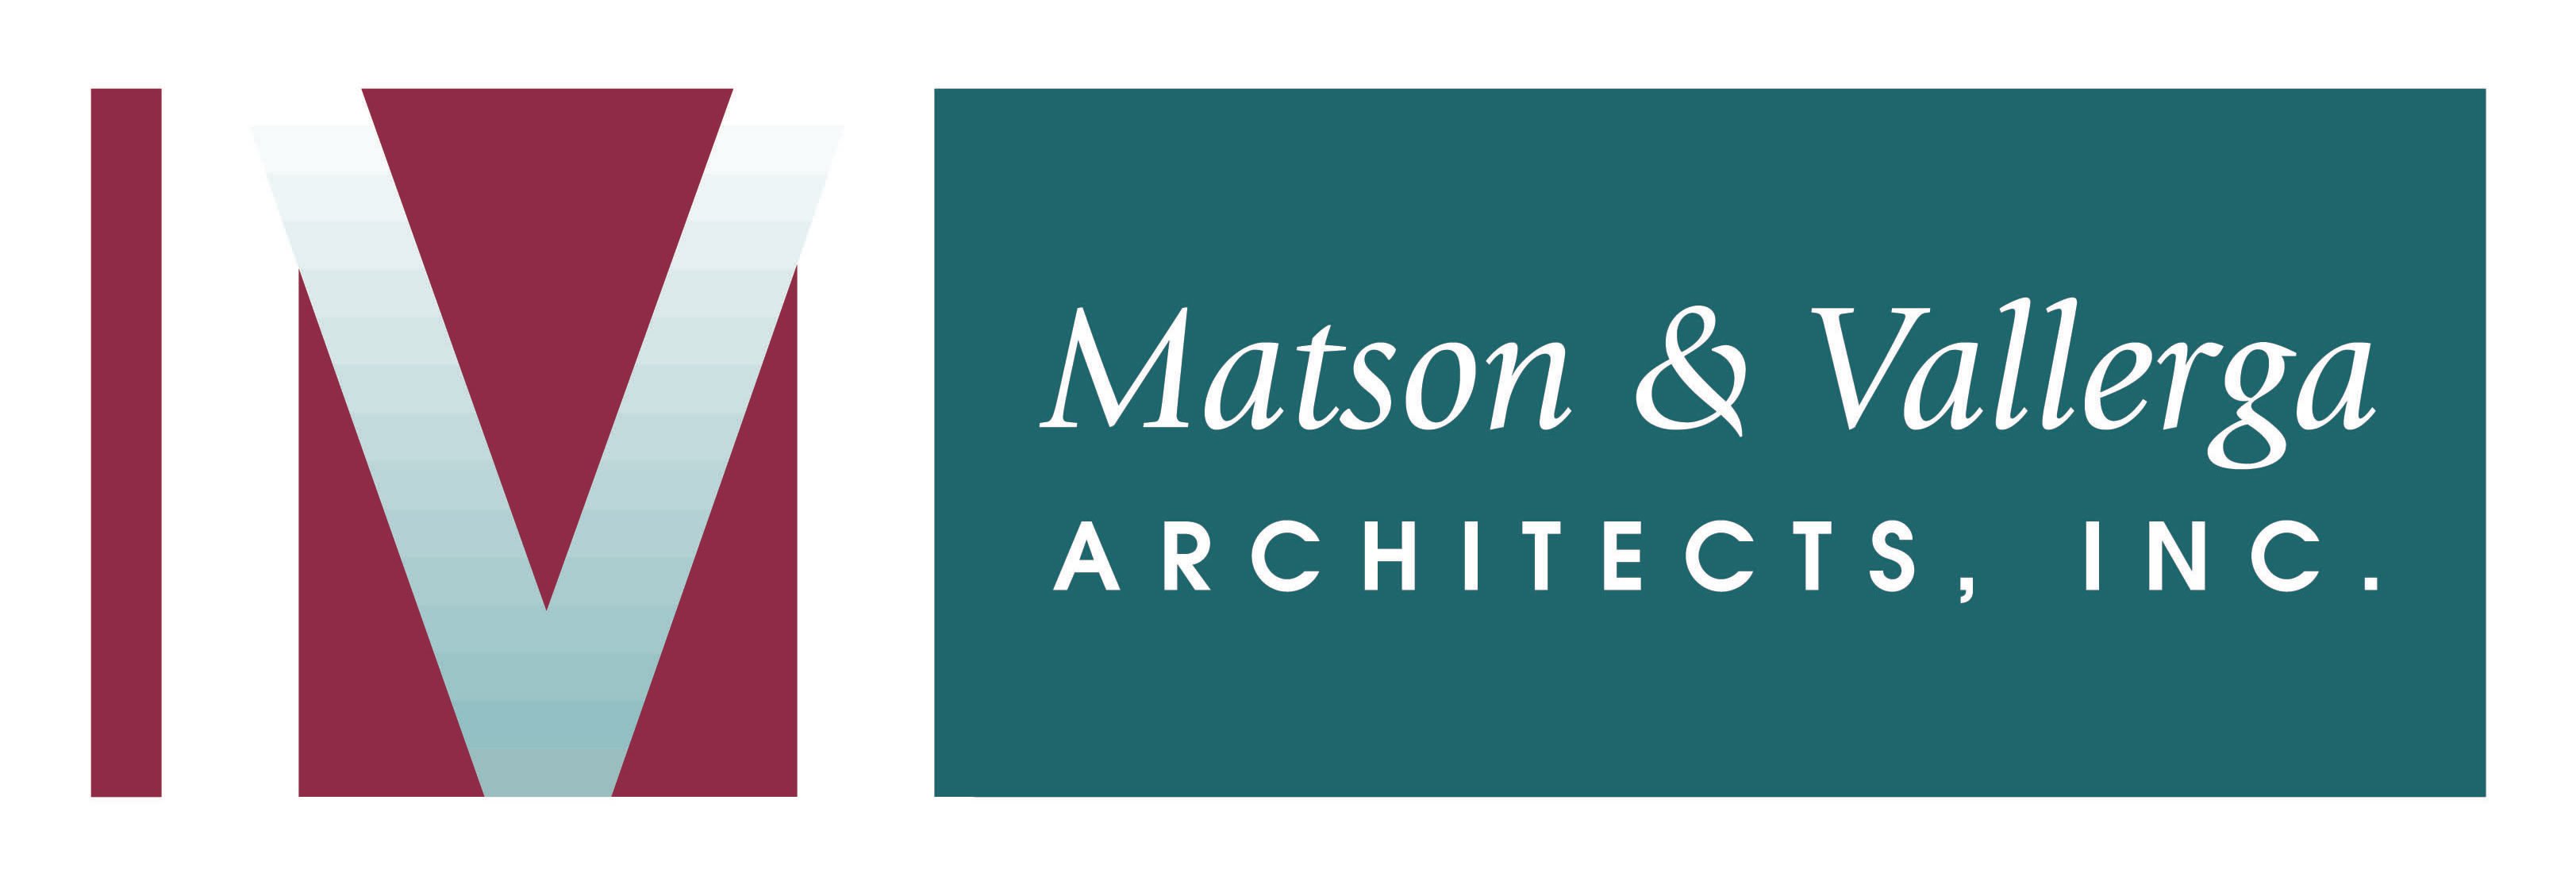 MATSON & VALLERGA ARCHITECTS, INC